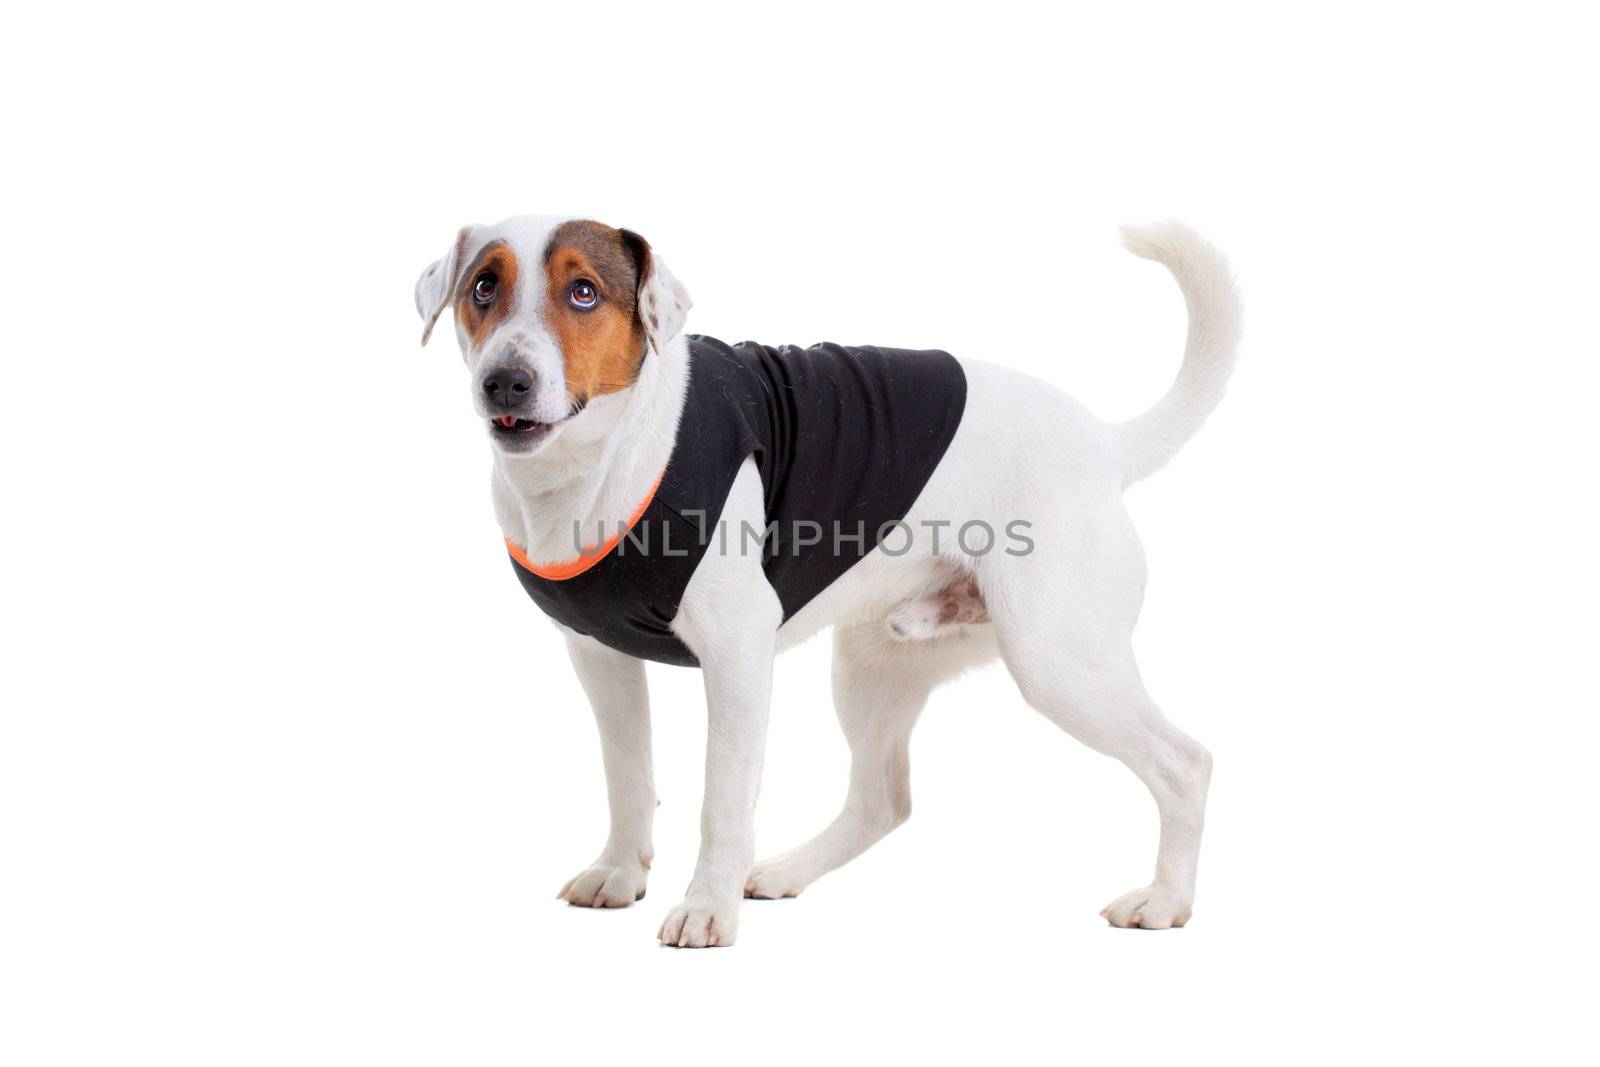 Jack Russel Terrier dog portrait by kokimk